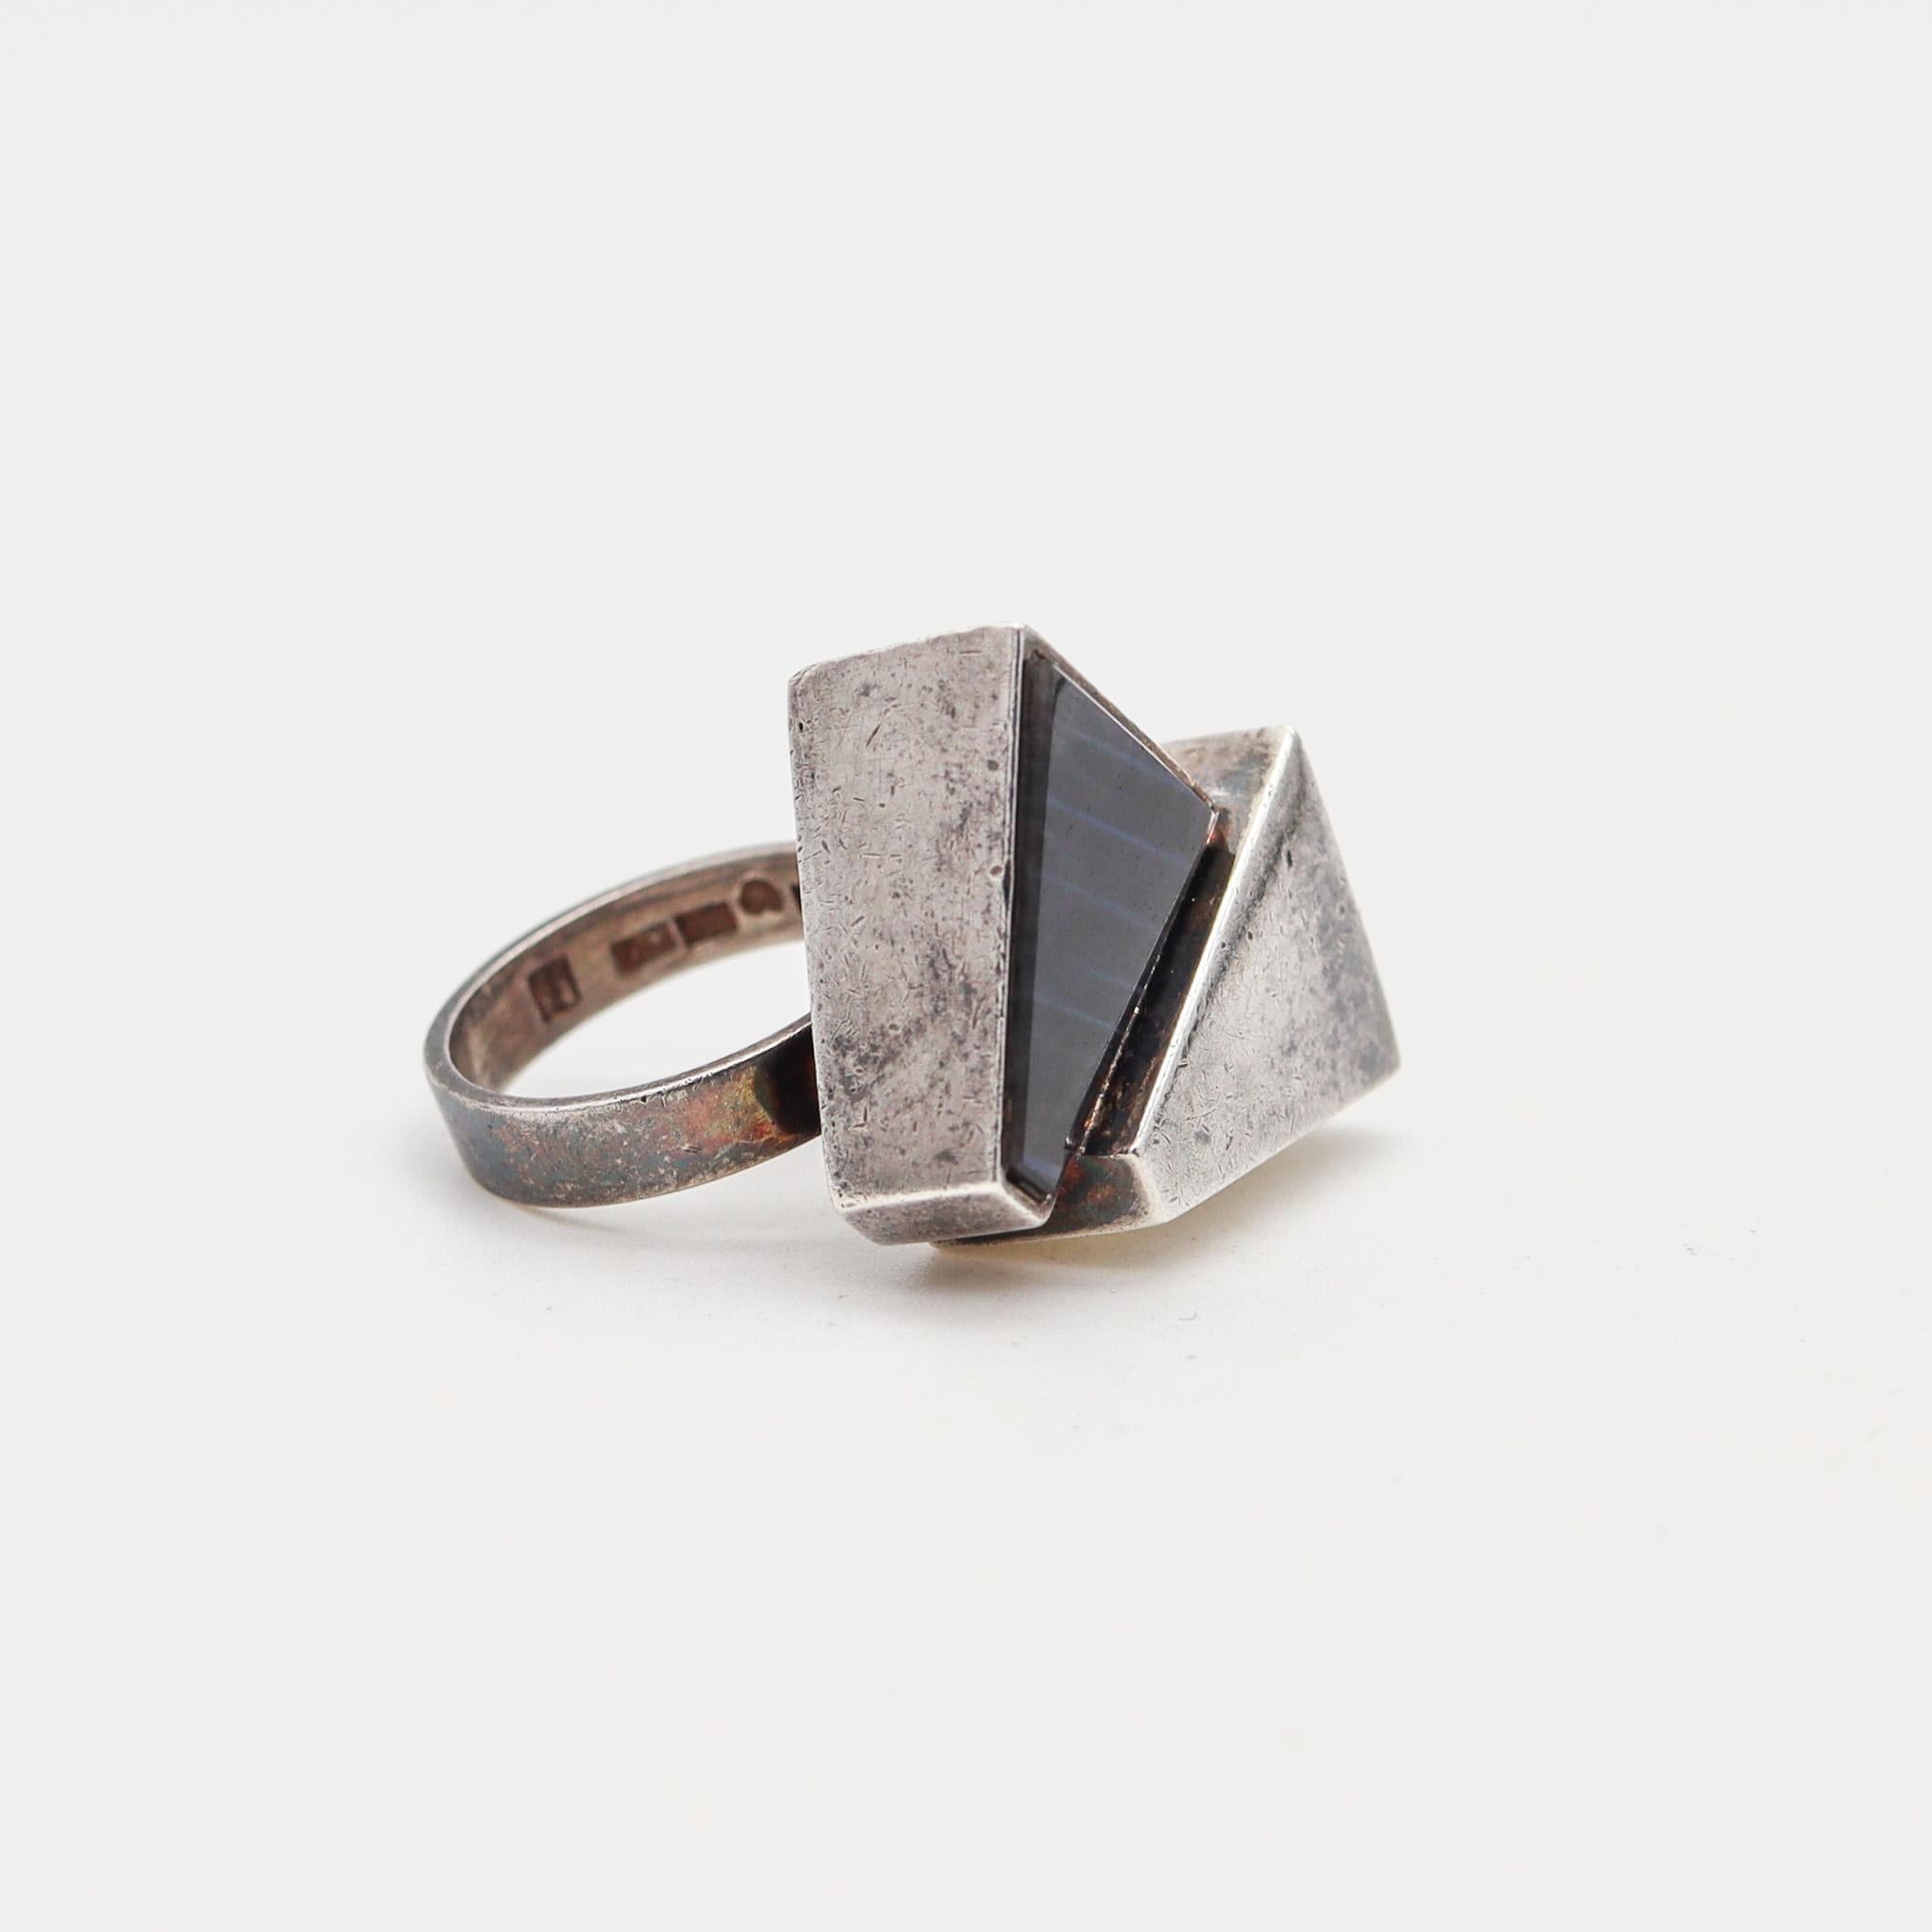 Modern Kaunis Koru 1974 Finland Geometric Ring In .925 Sterling Silver With Labradorite